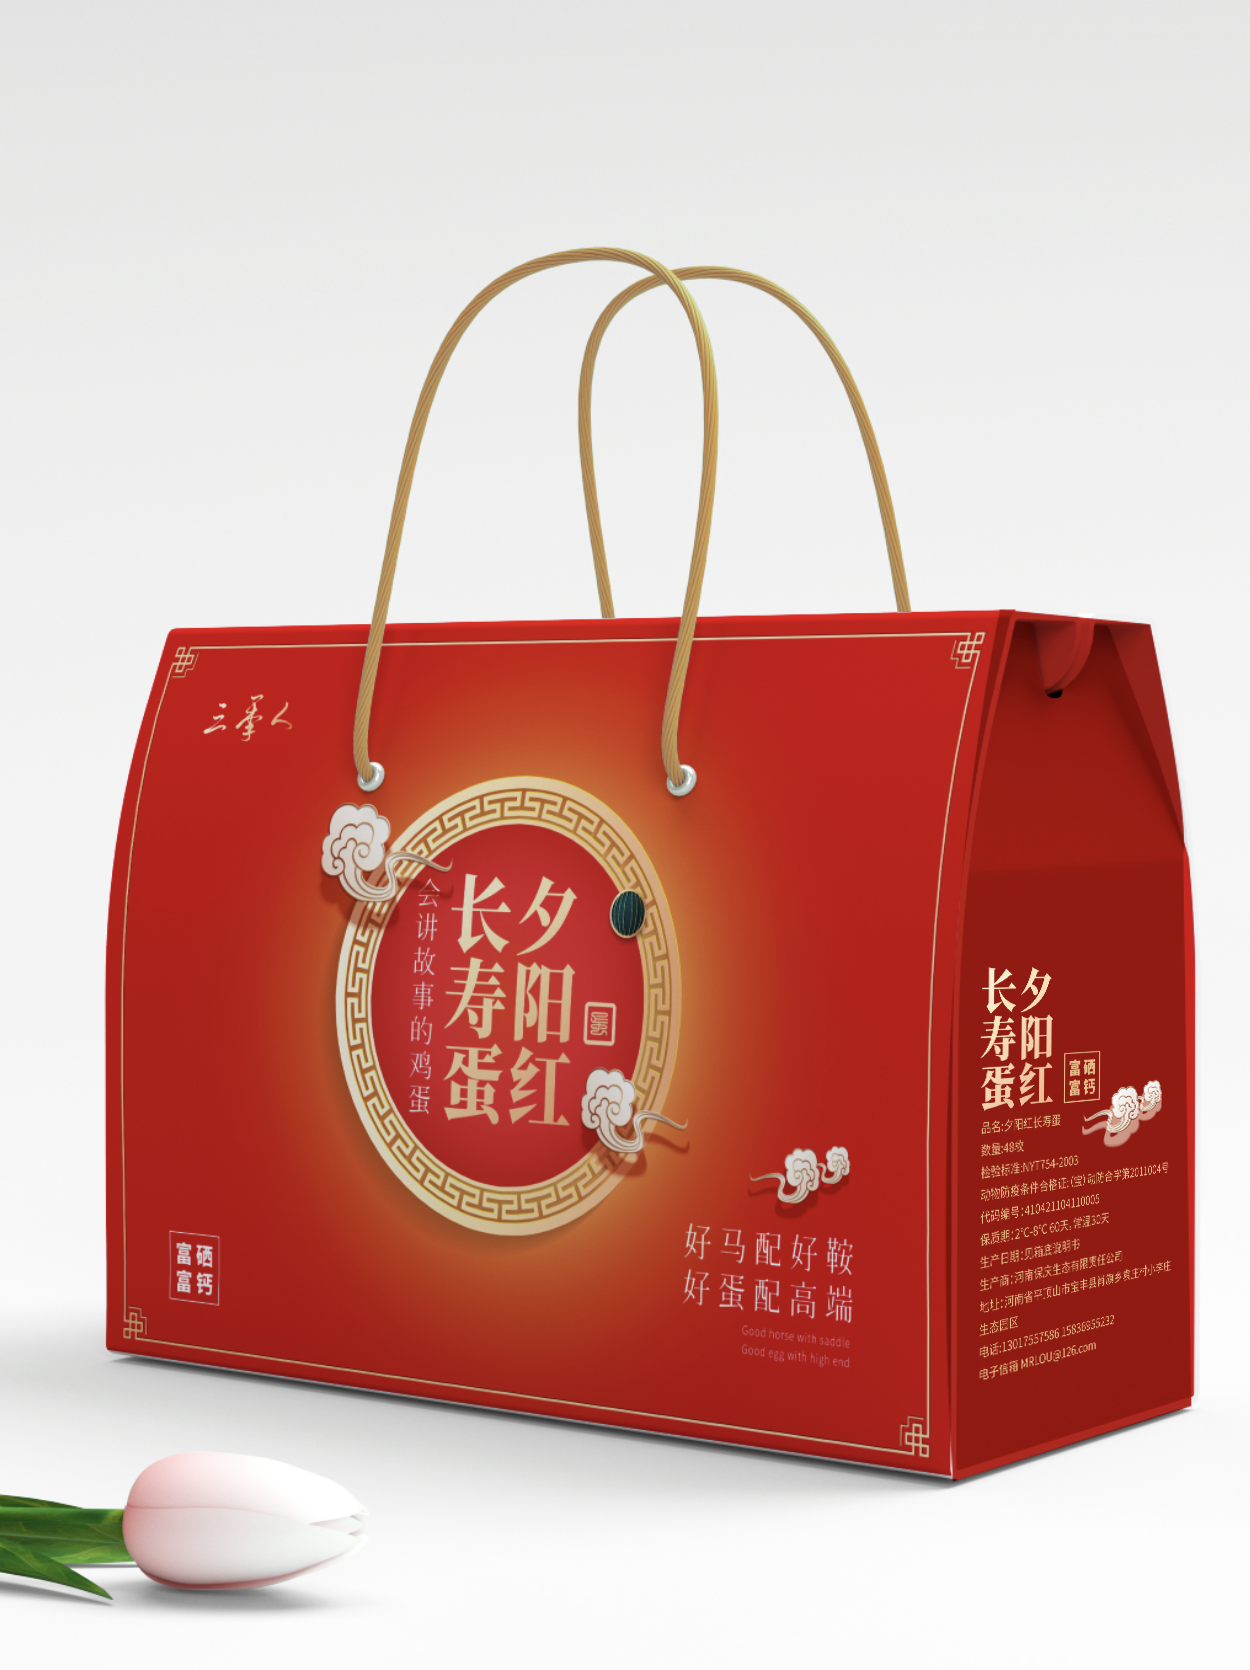 热门沧州瓶型设计公司案例TOP10名单发布 